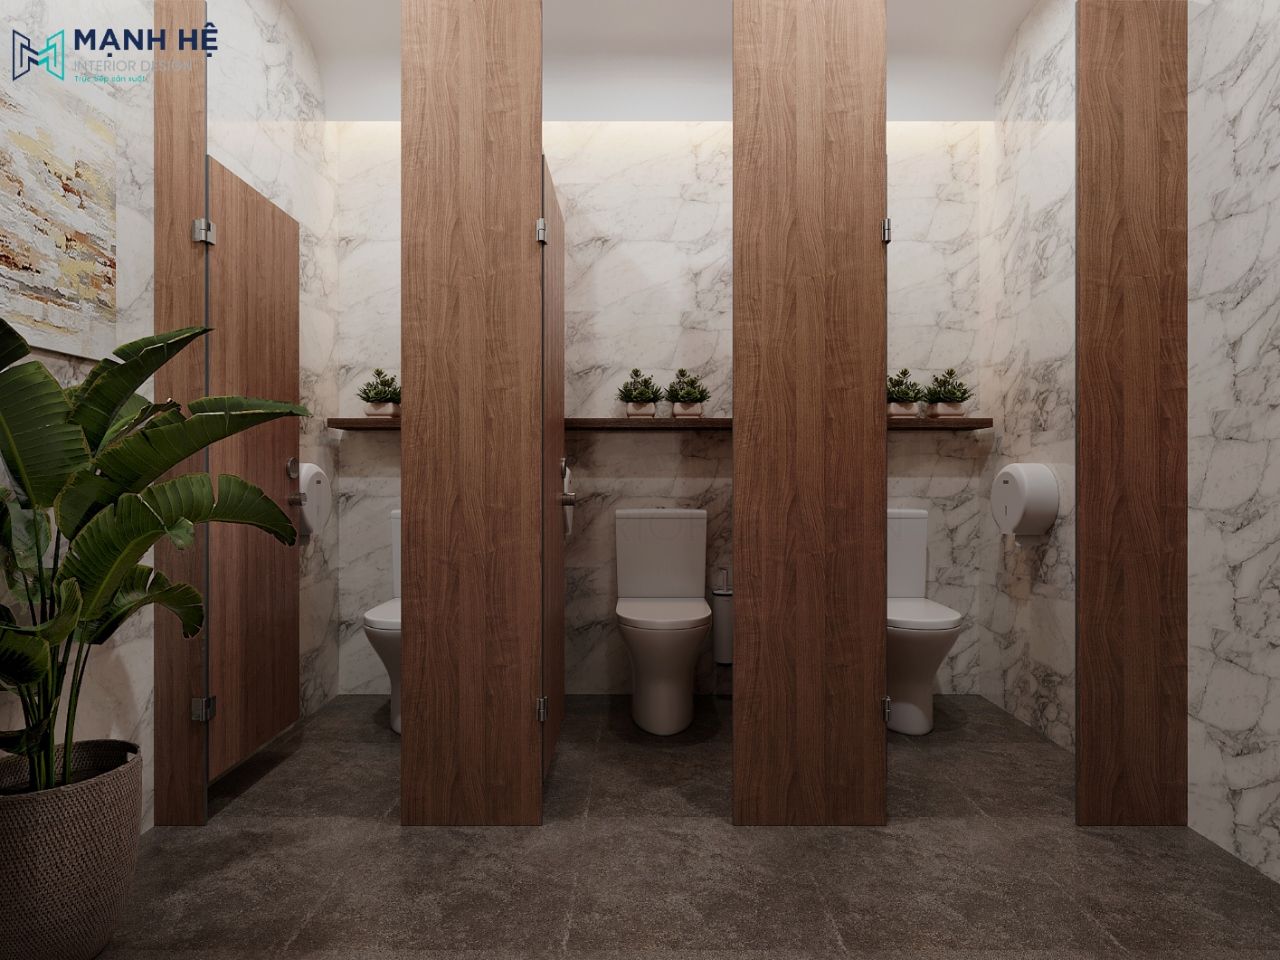 Nhà vệ sinh nữ được thiết kế từng buồng riêng biệt tăng sự riêng tư